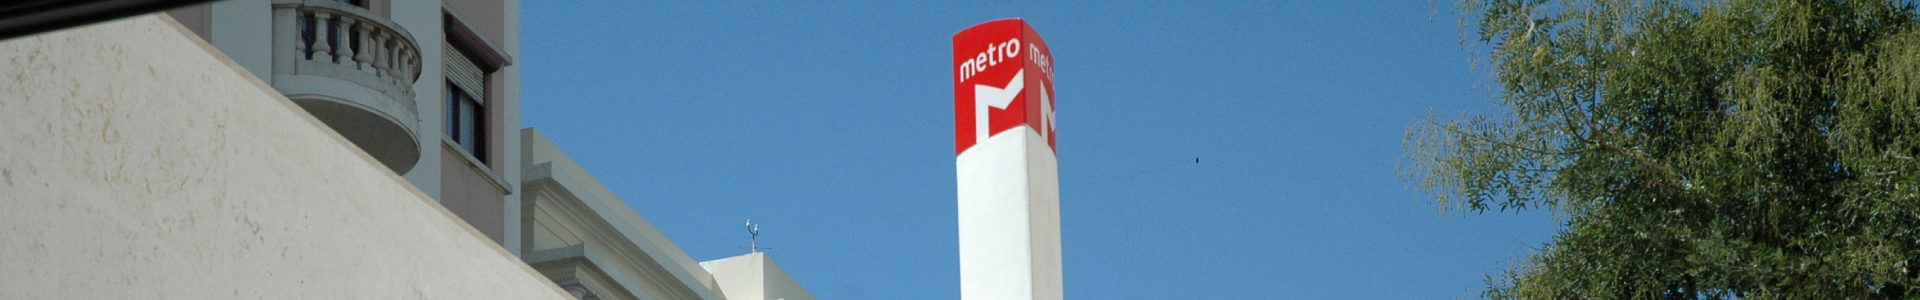 Banner - logotipo do metro sobre a cidade